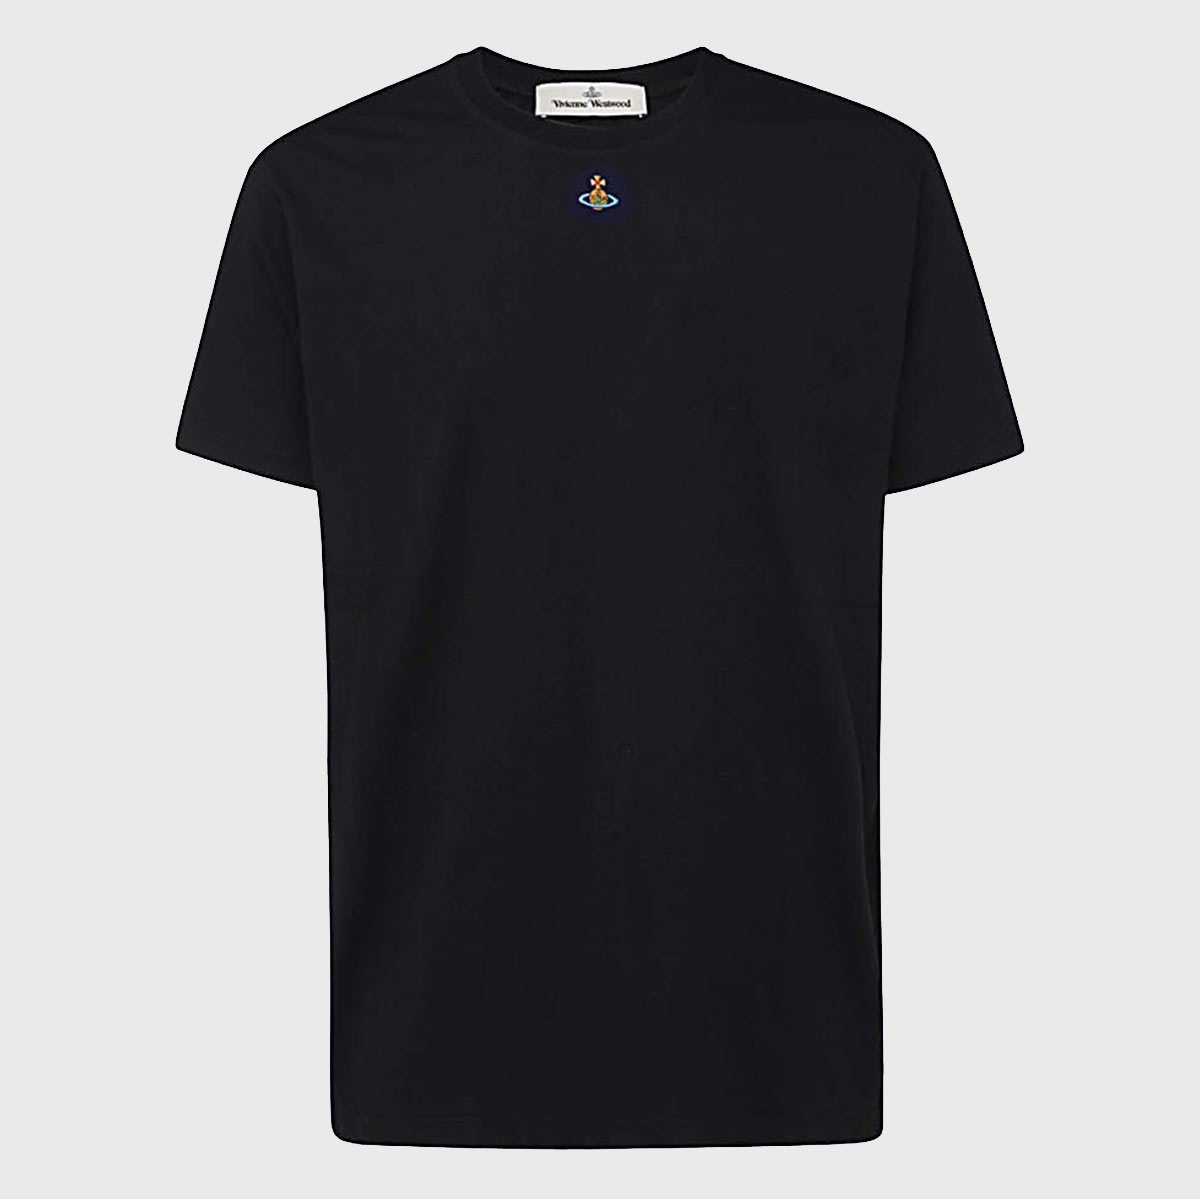 Vivienne Westwood Black Cotton T-shirt